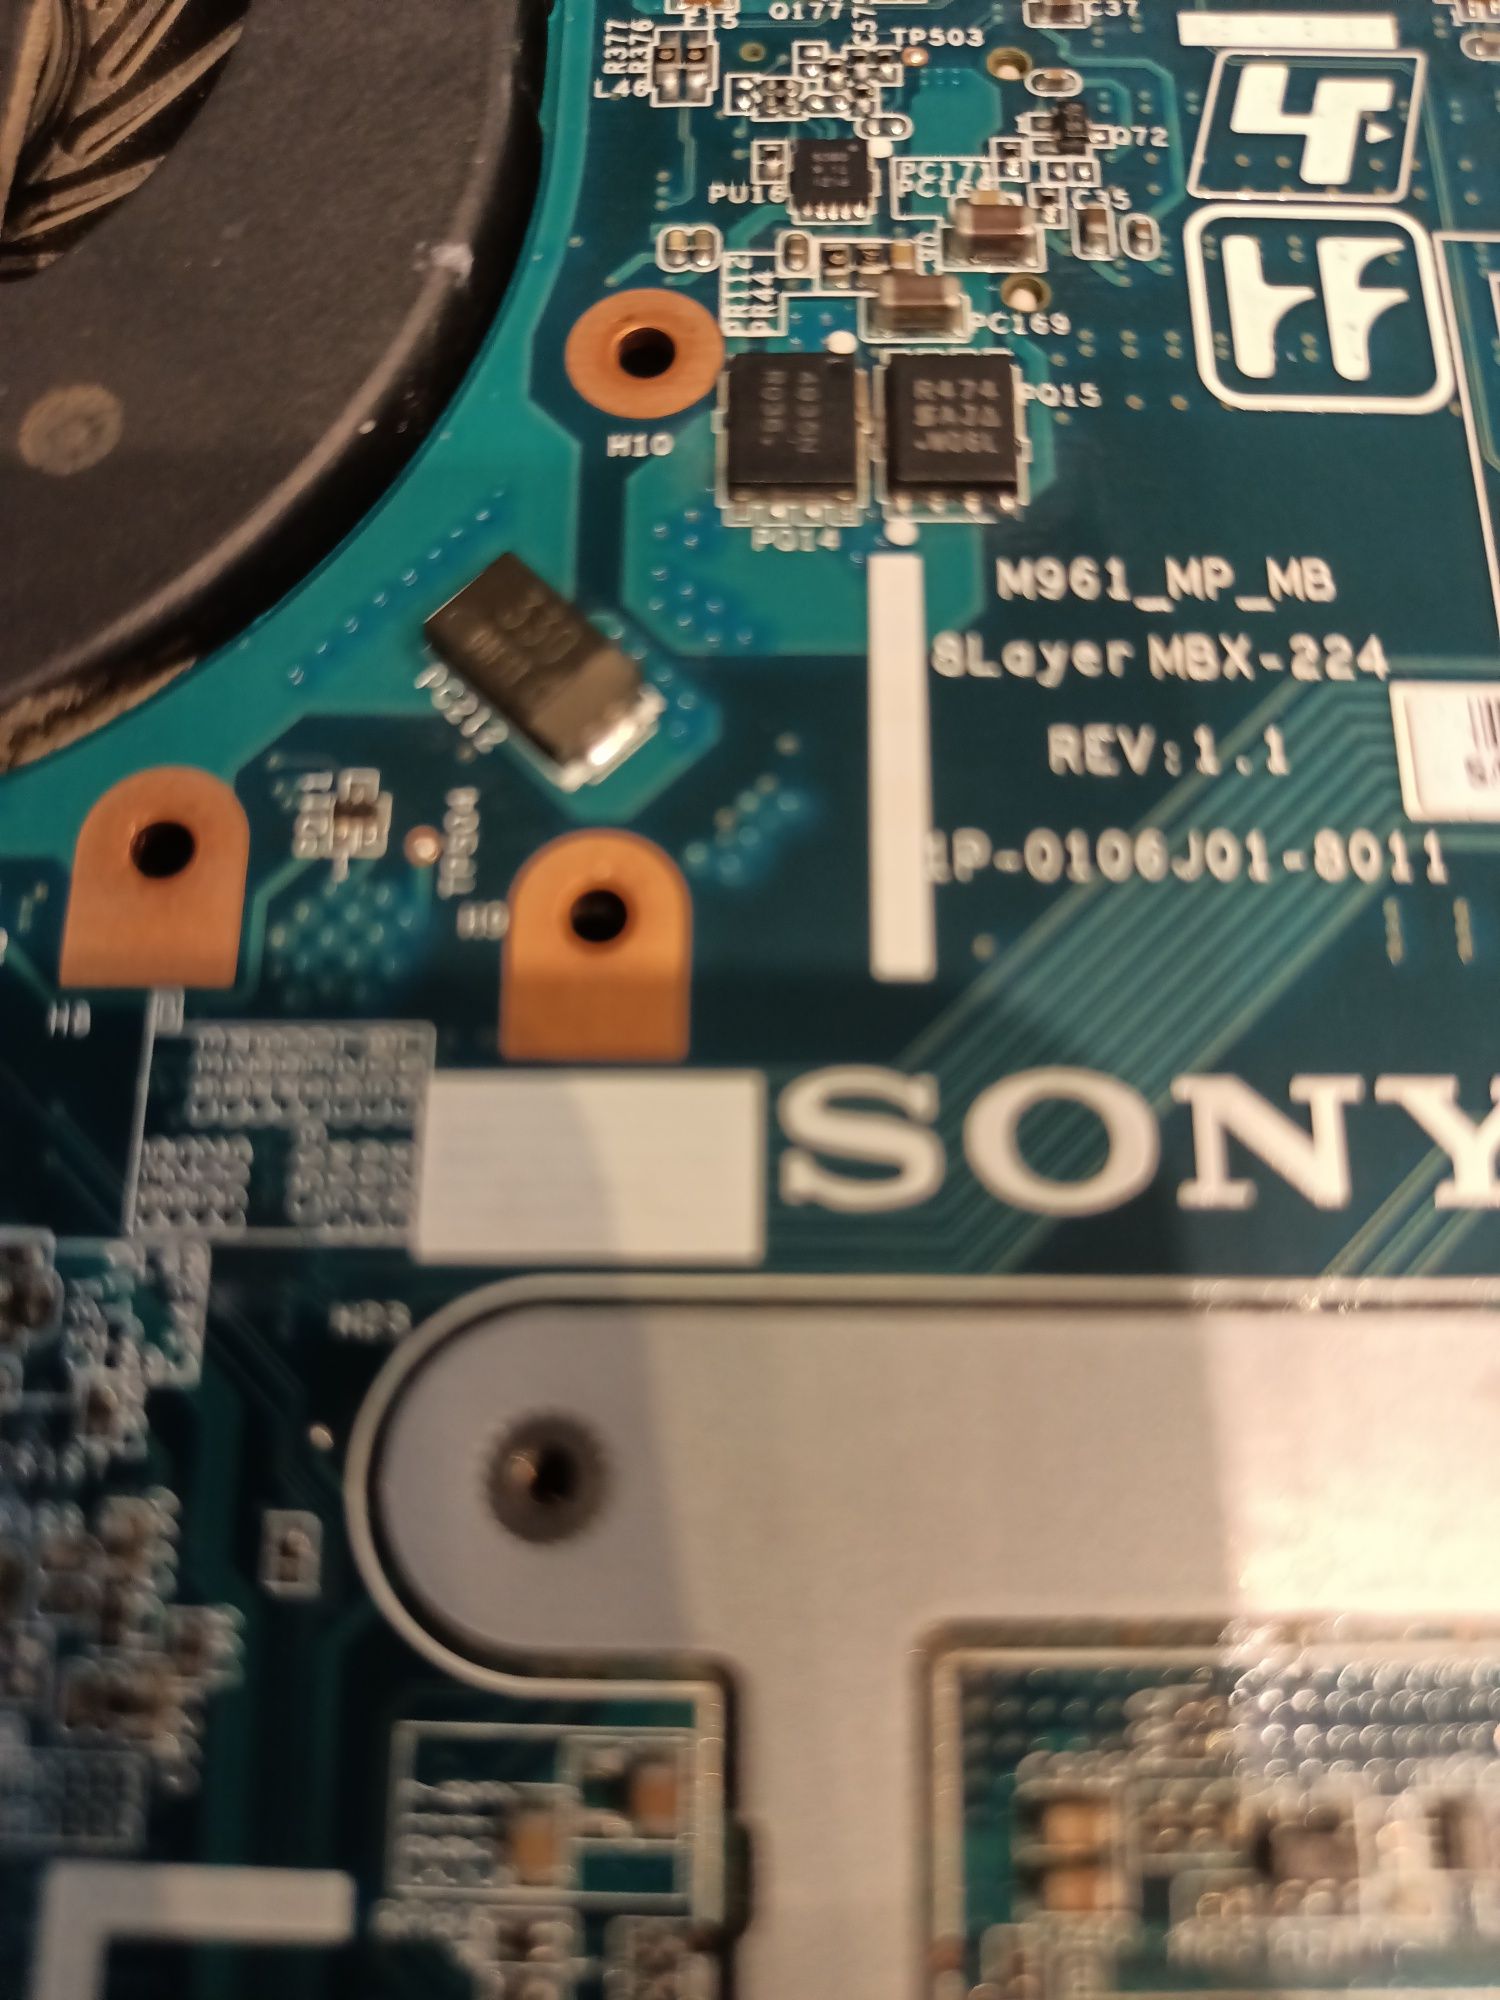 Płyta główna Sony M 961 MBX-224